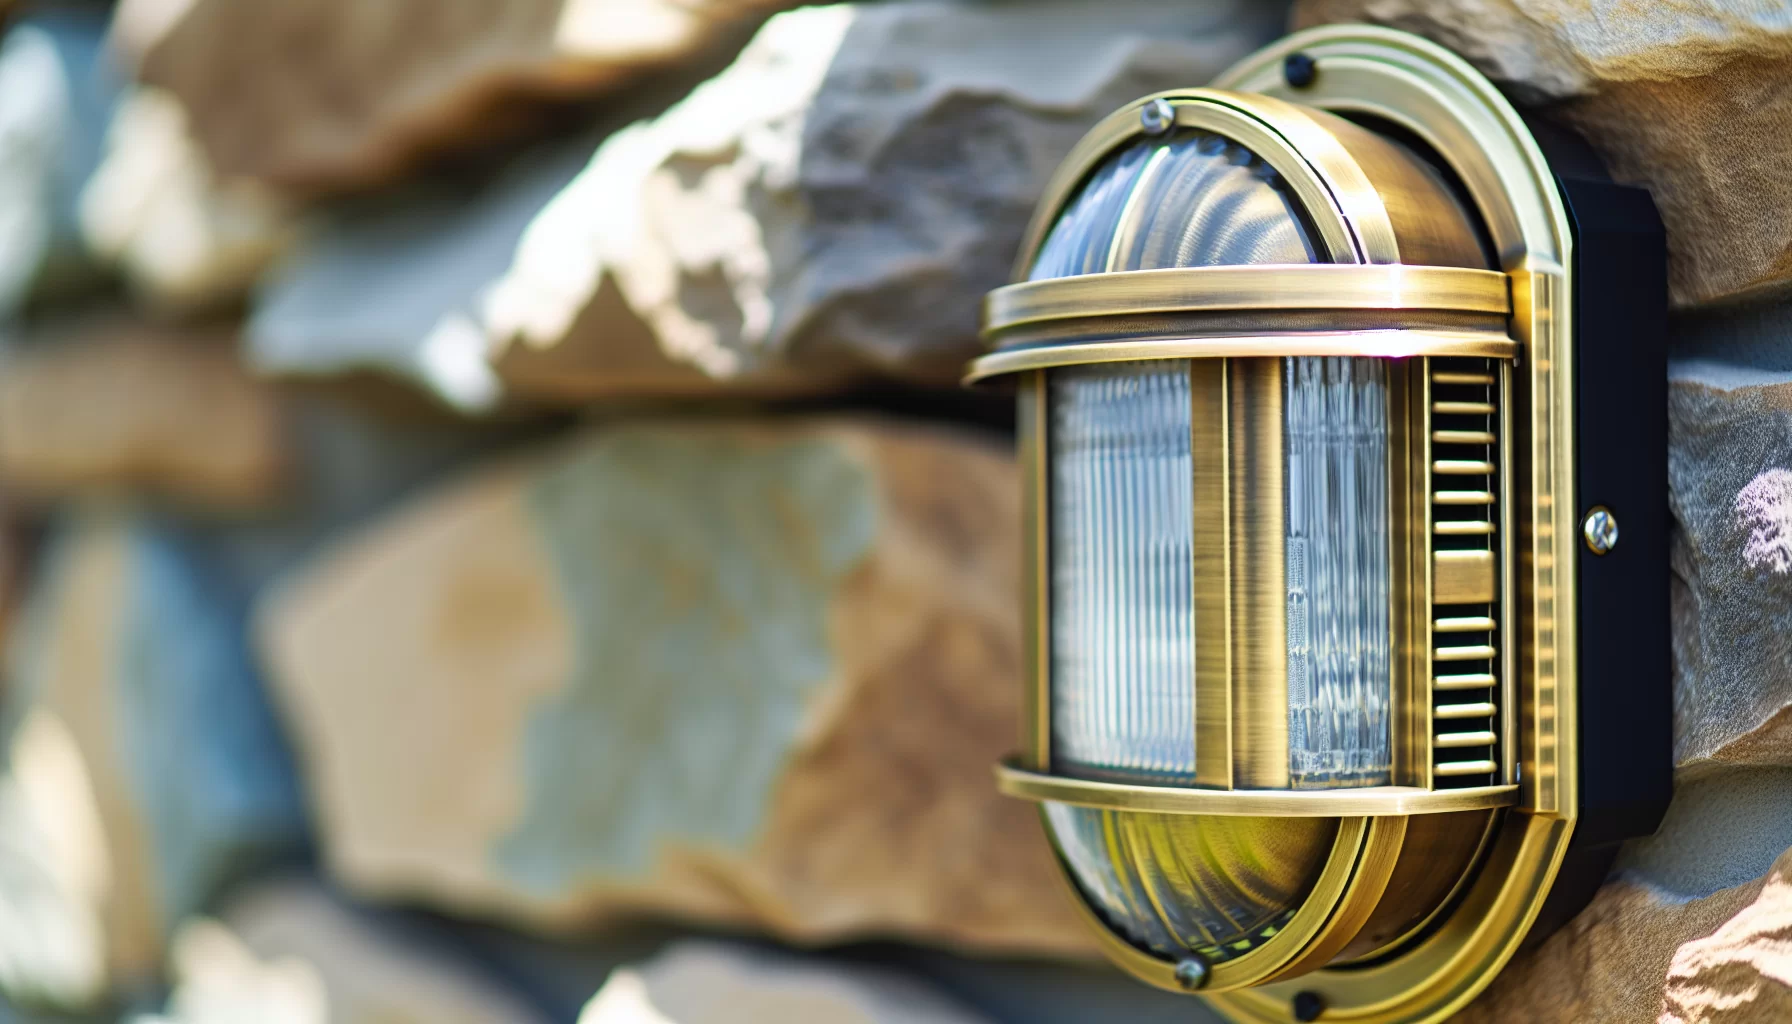 Brass outdoor light fixture close-up